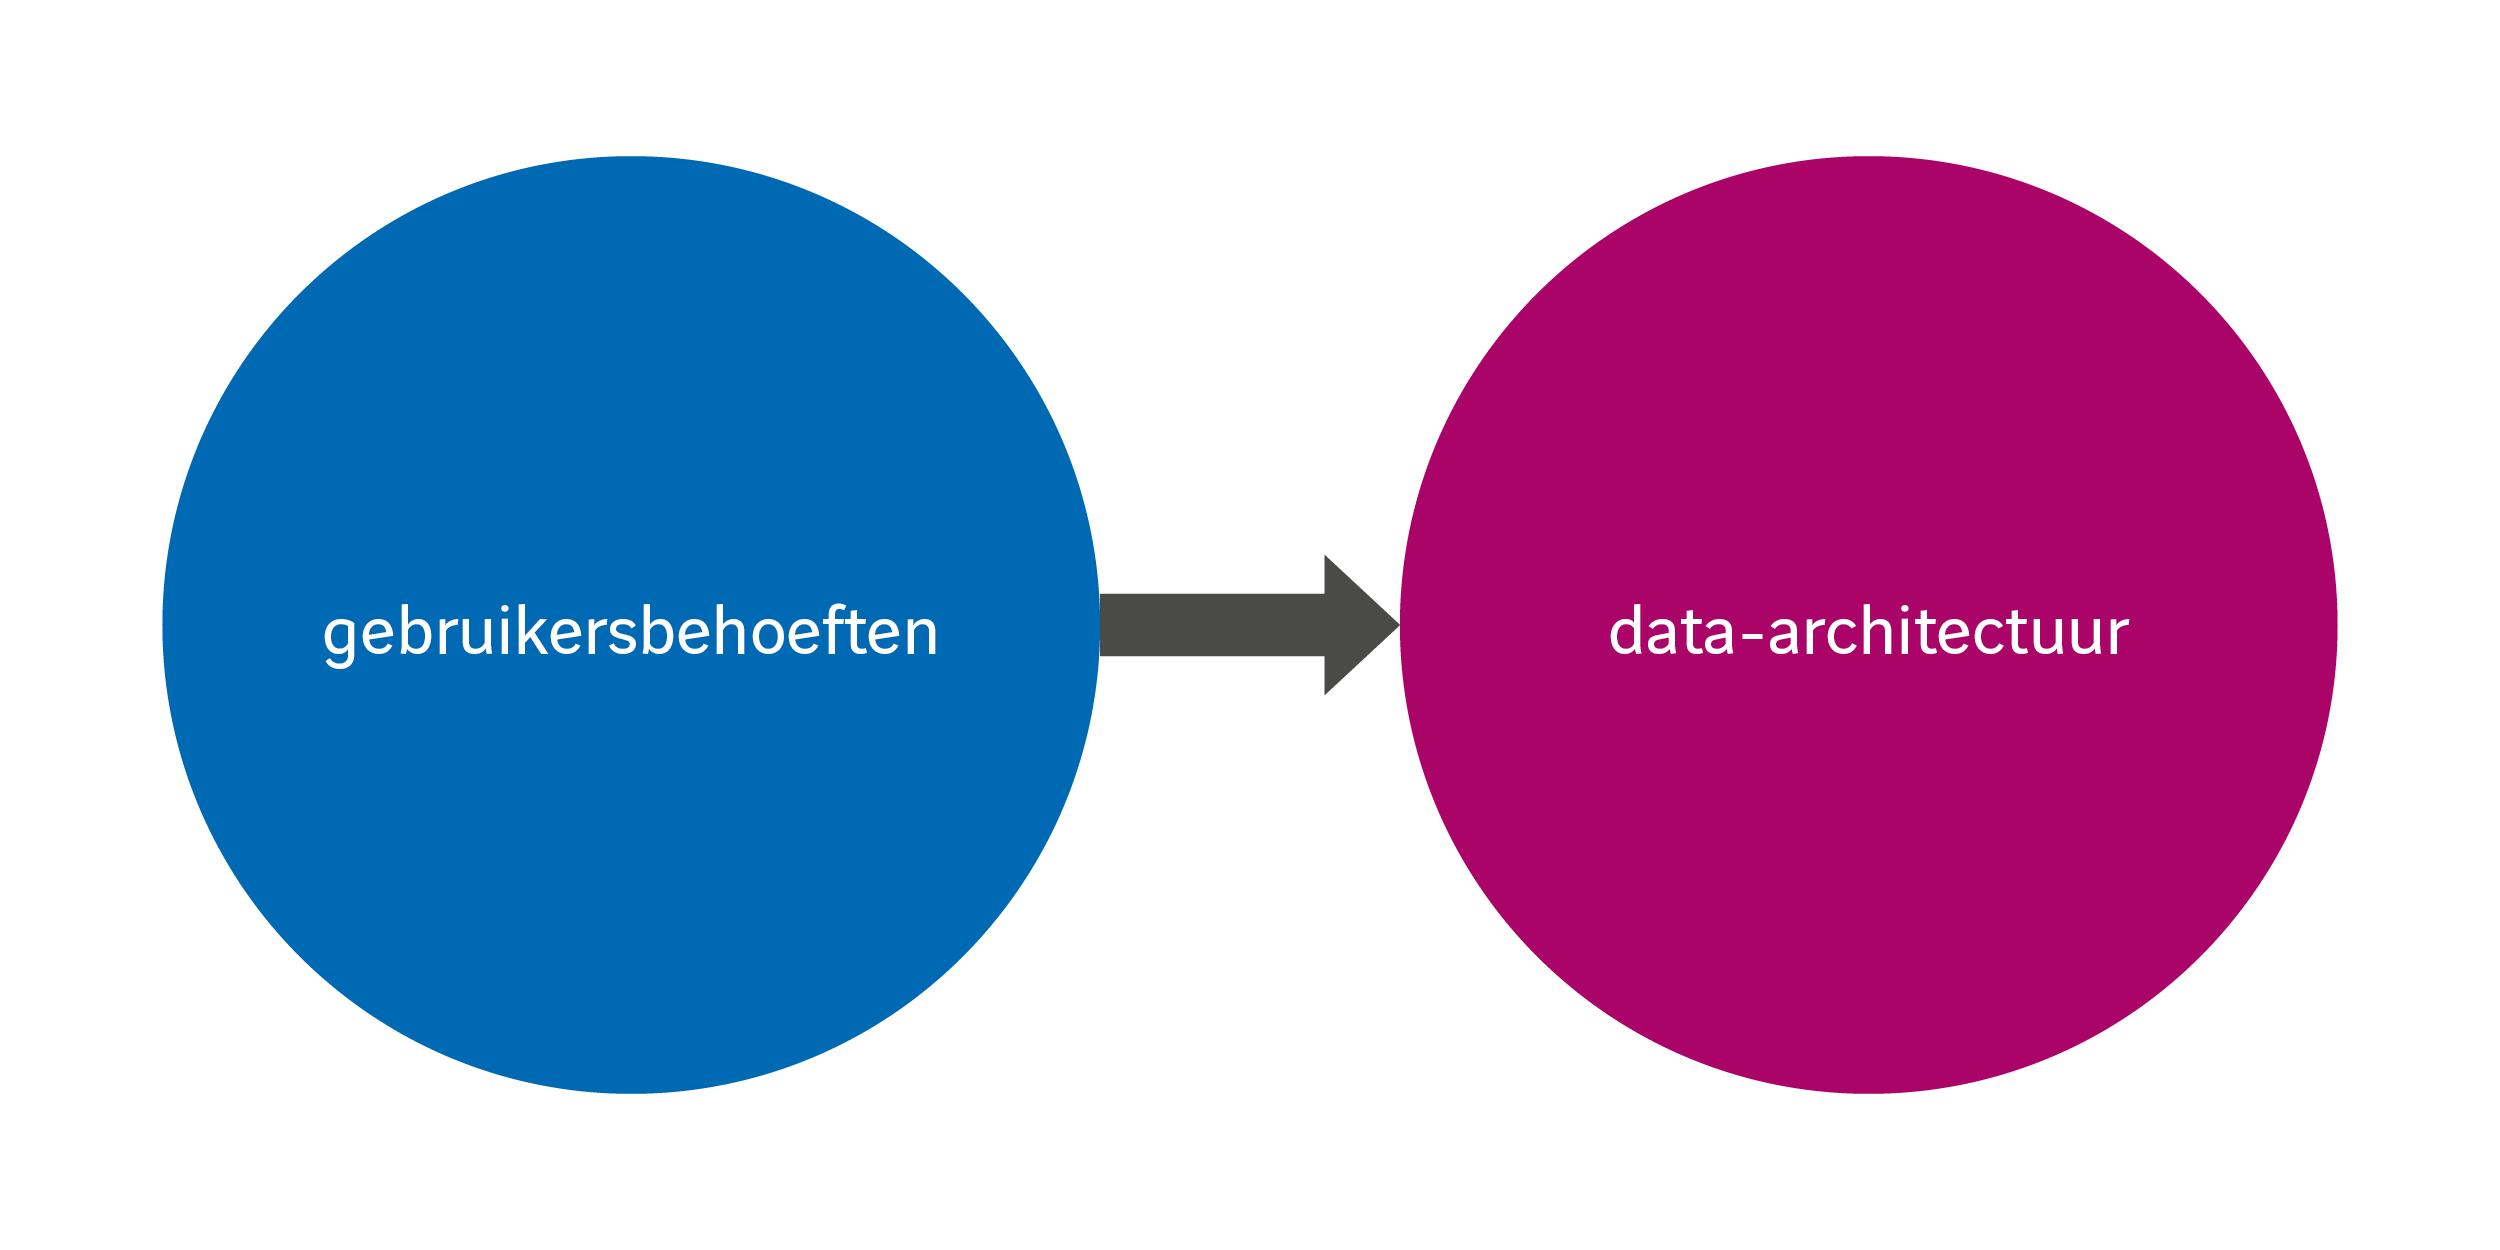 Het belang van vraaggedreven data-architecturen